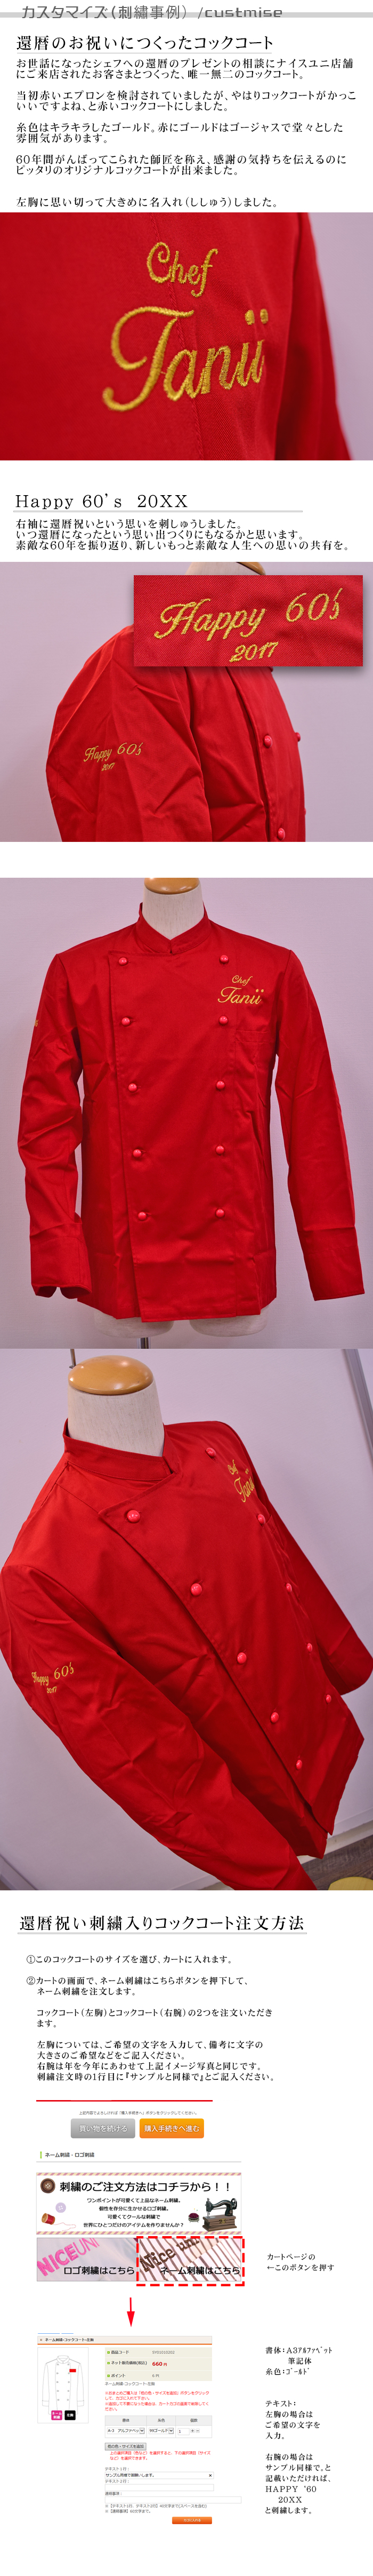 BA1220-2赤いコックコート刺繡(ししゅう)実績紹介 